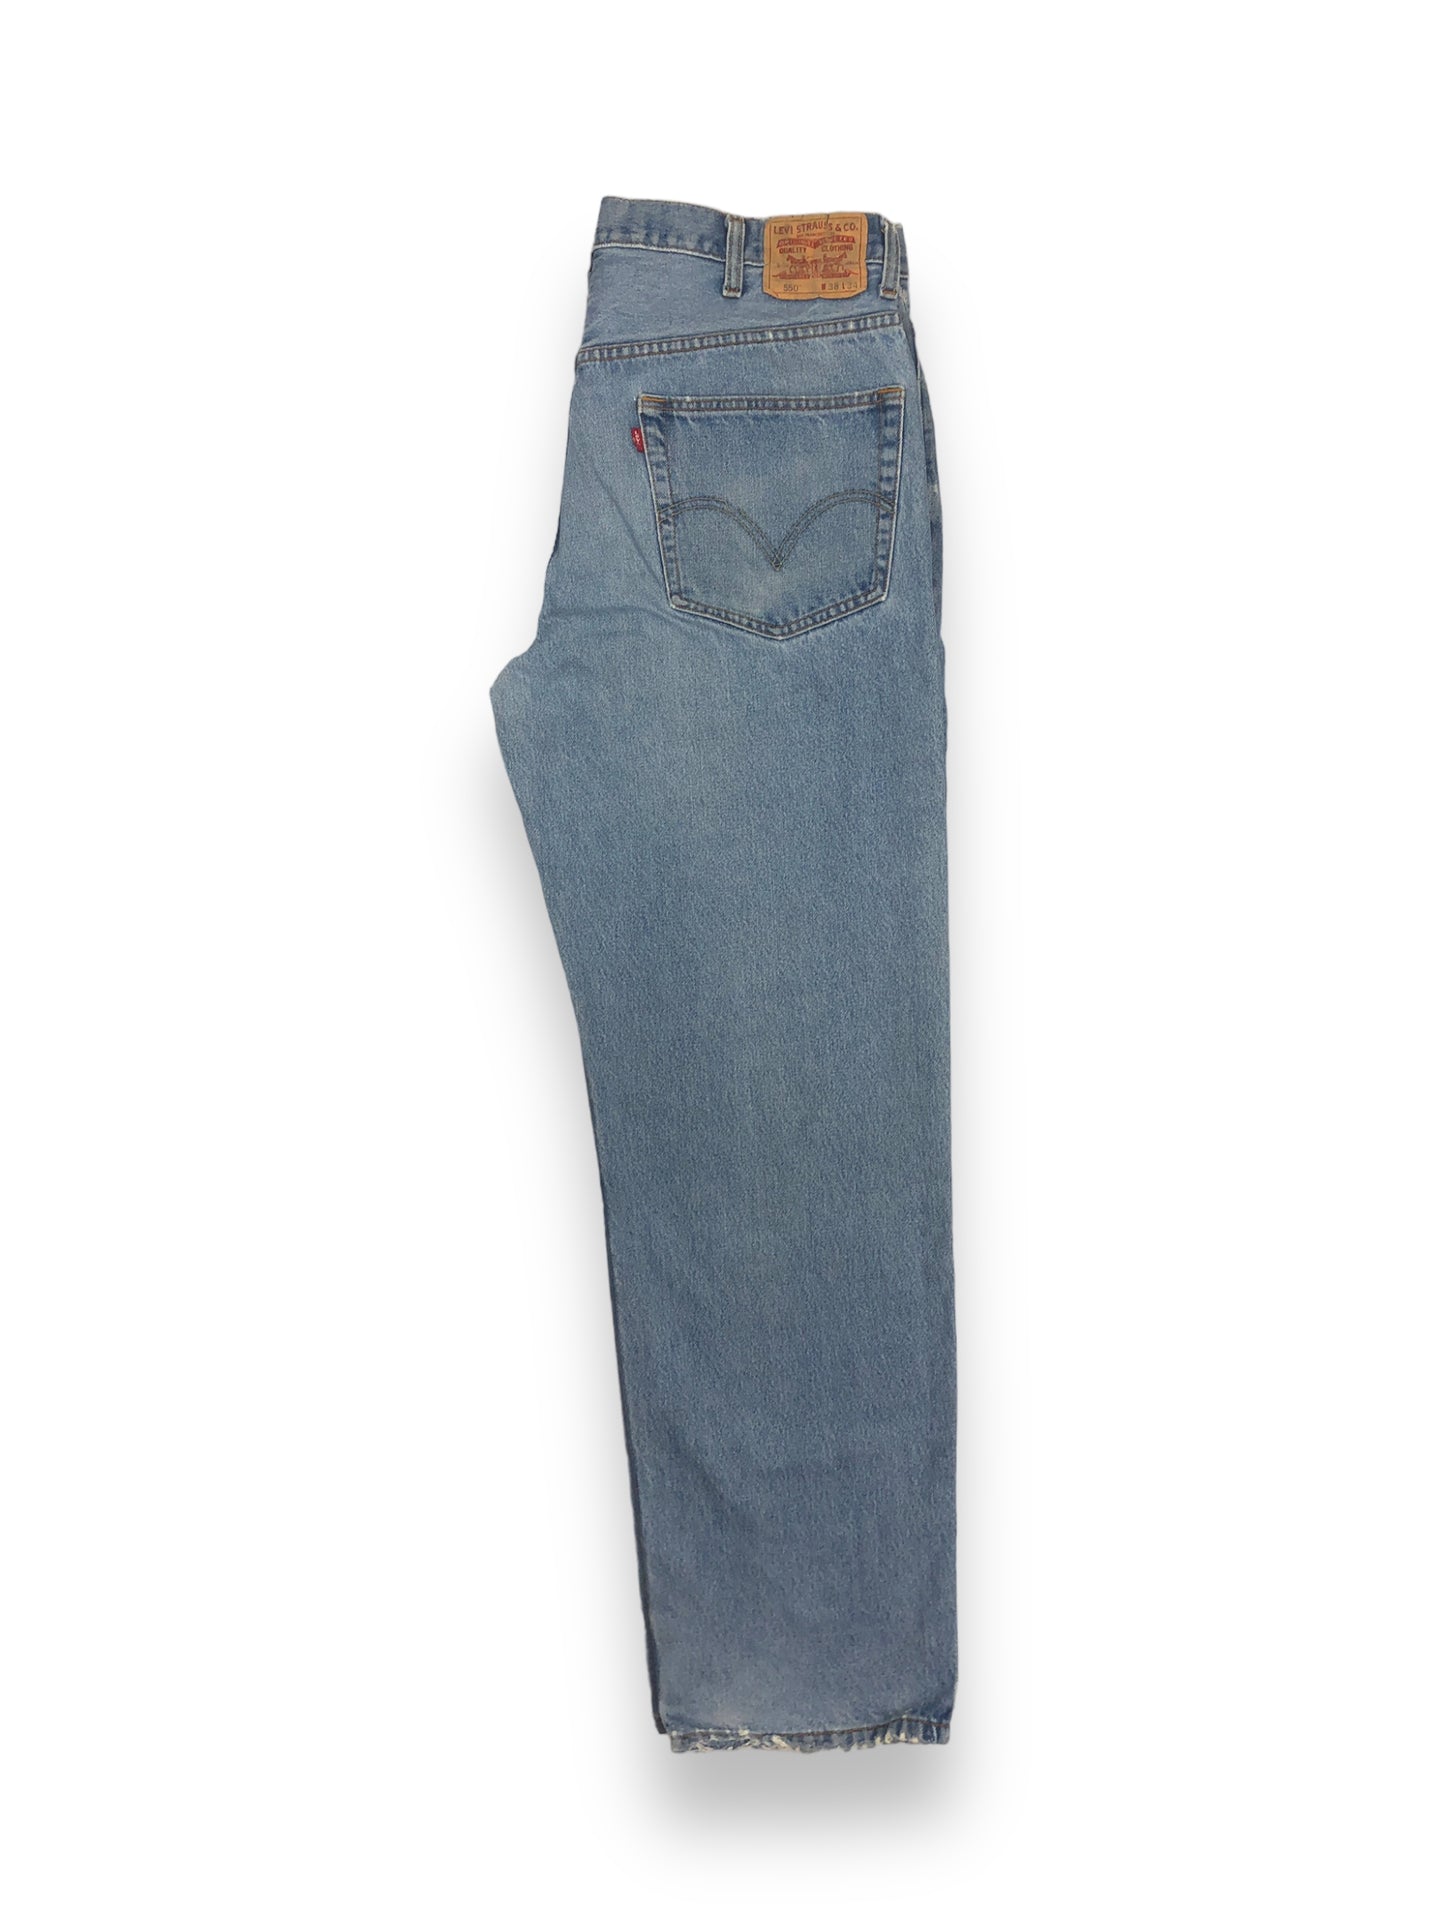 Levis 550 Baggy Jeans